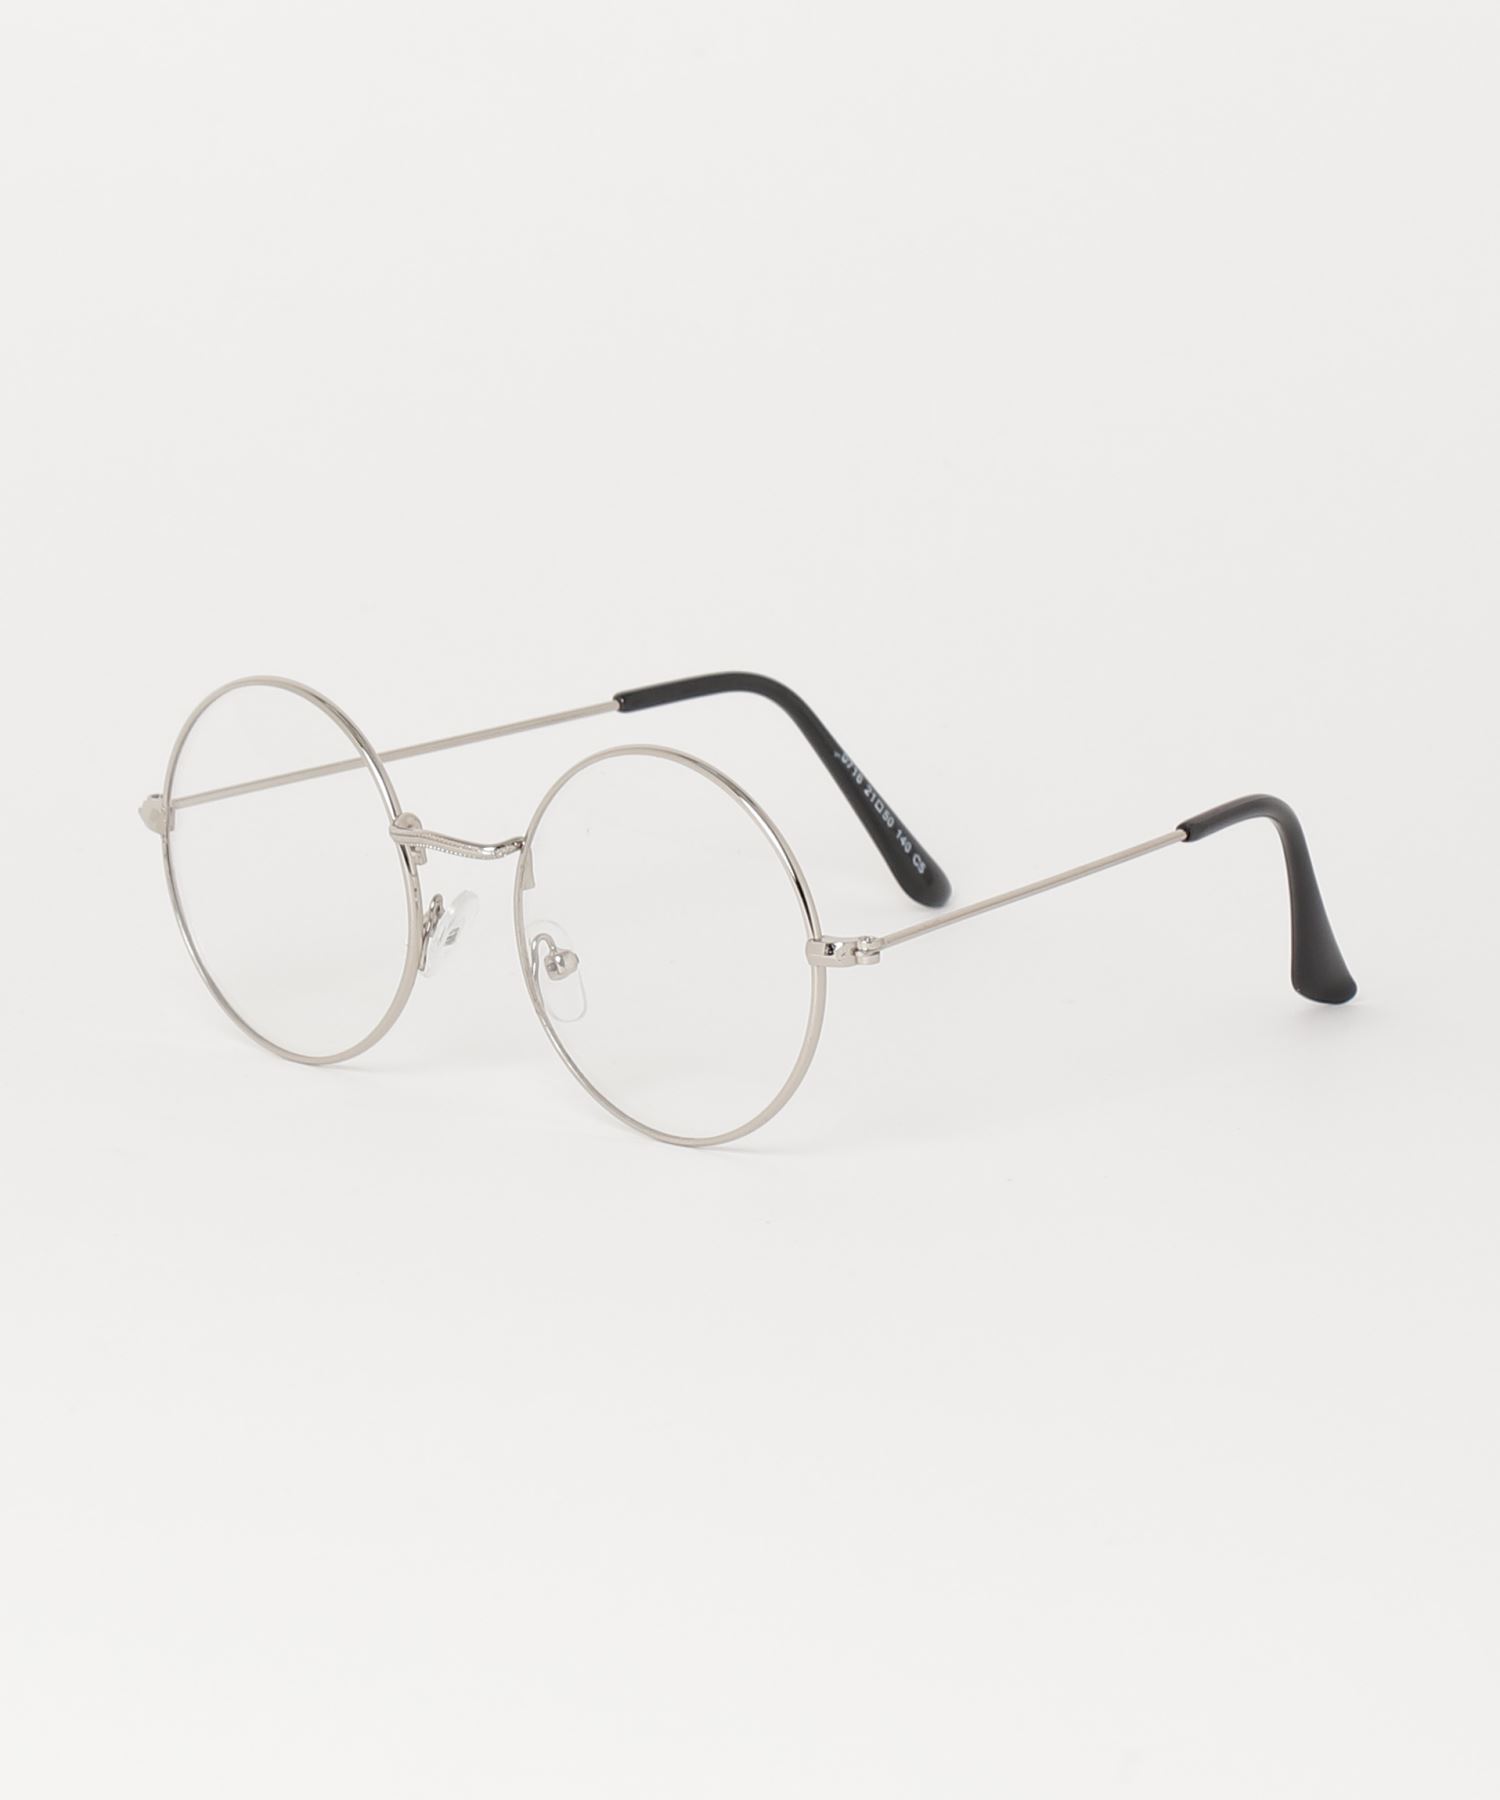 A'GEM/9 × .kom『.kom SELECT/ドットケーオーエムセレクト』Fashon Glass/ファッション眼鏡 メガネ